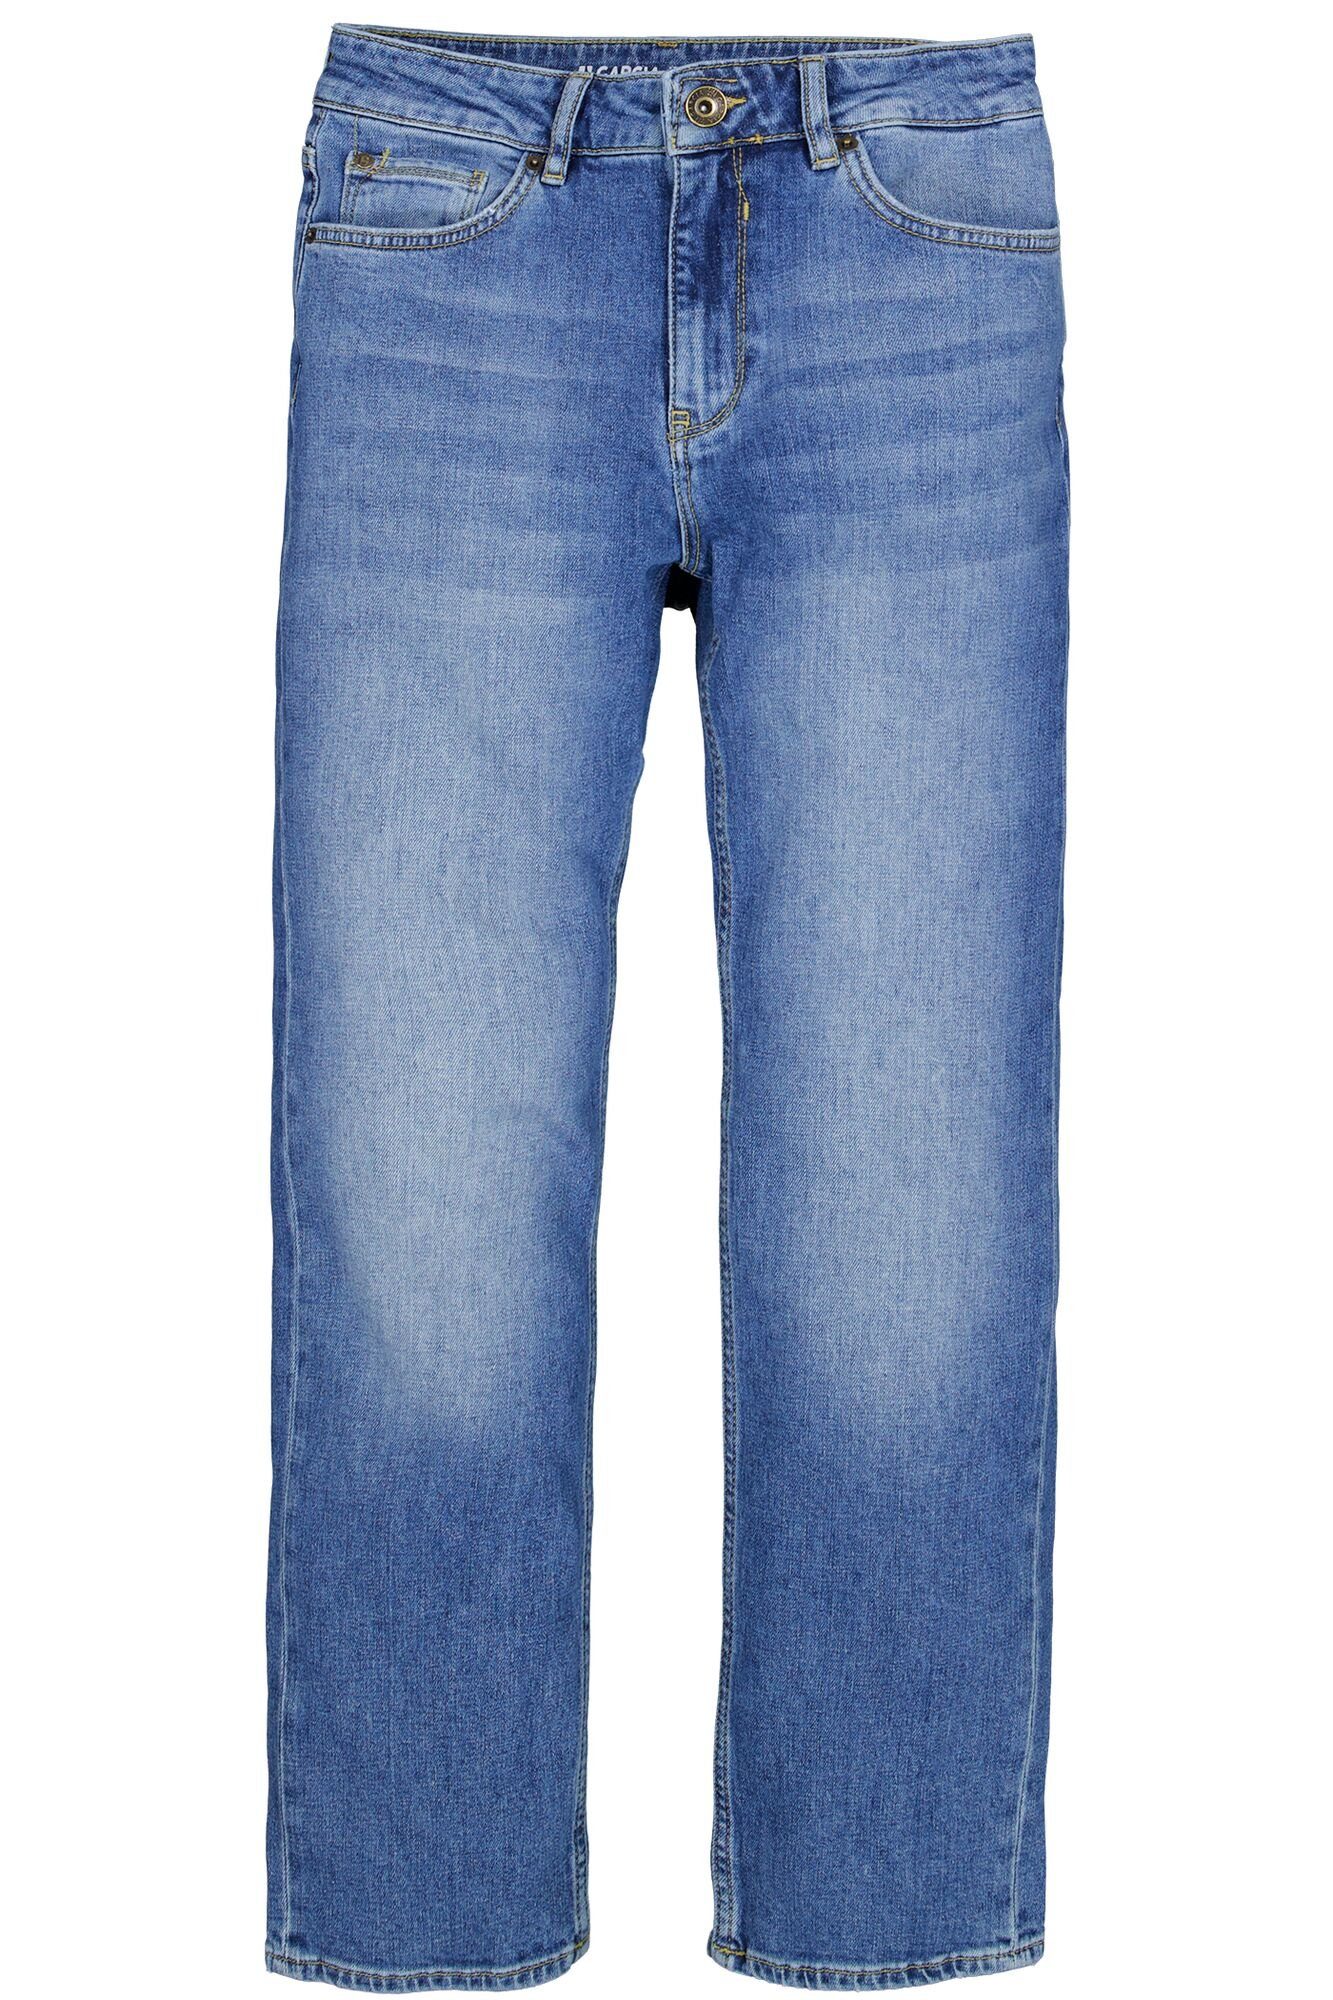 295.5132 JEANS GARCIA medium GARCIA Ragged Stretch-Jeans used LUISA - Denim blue